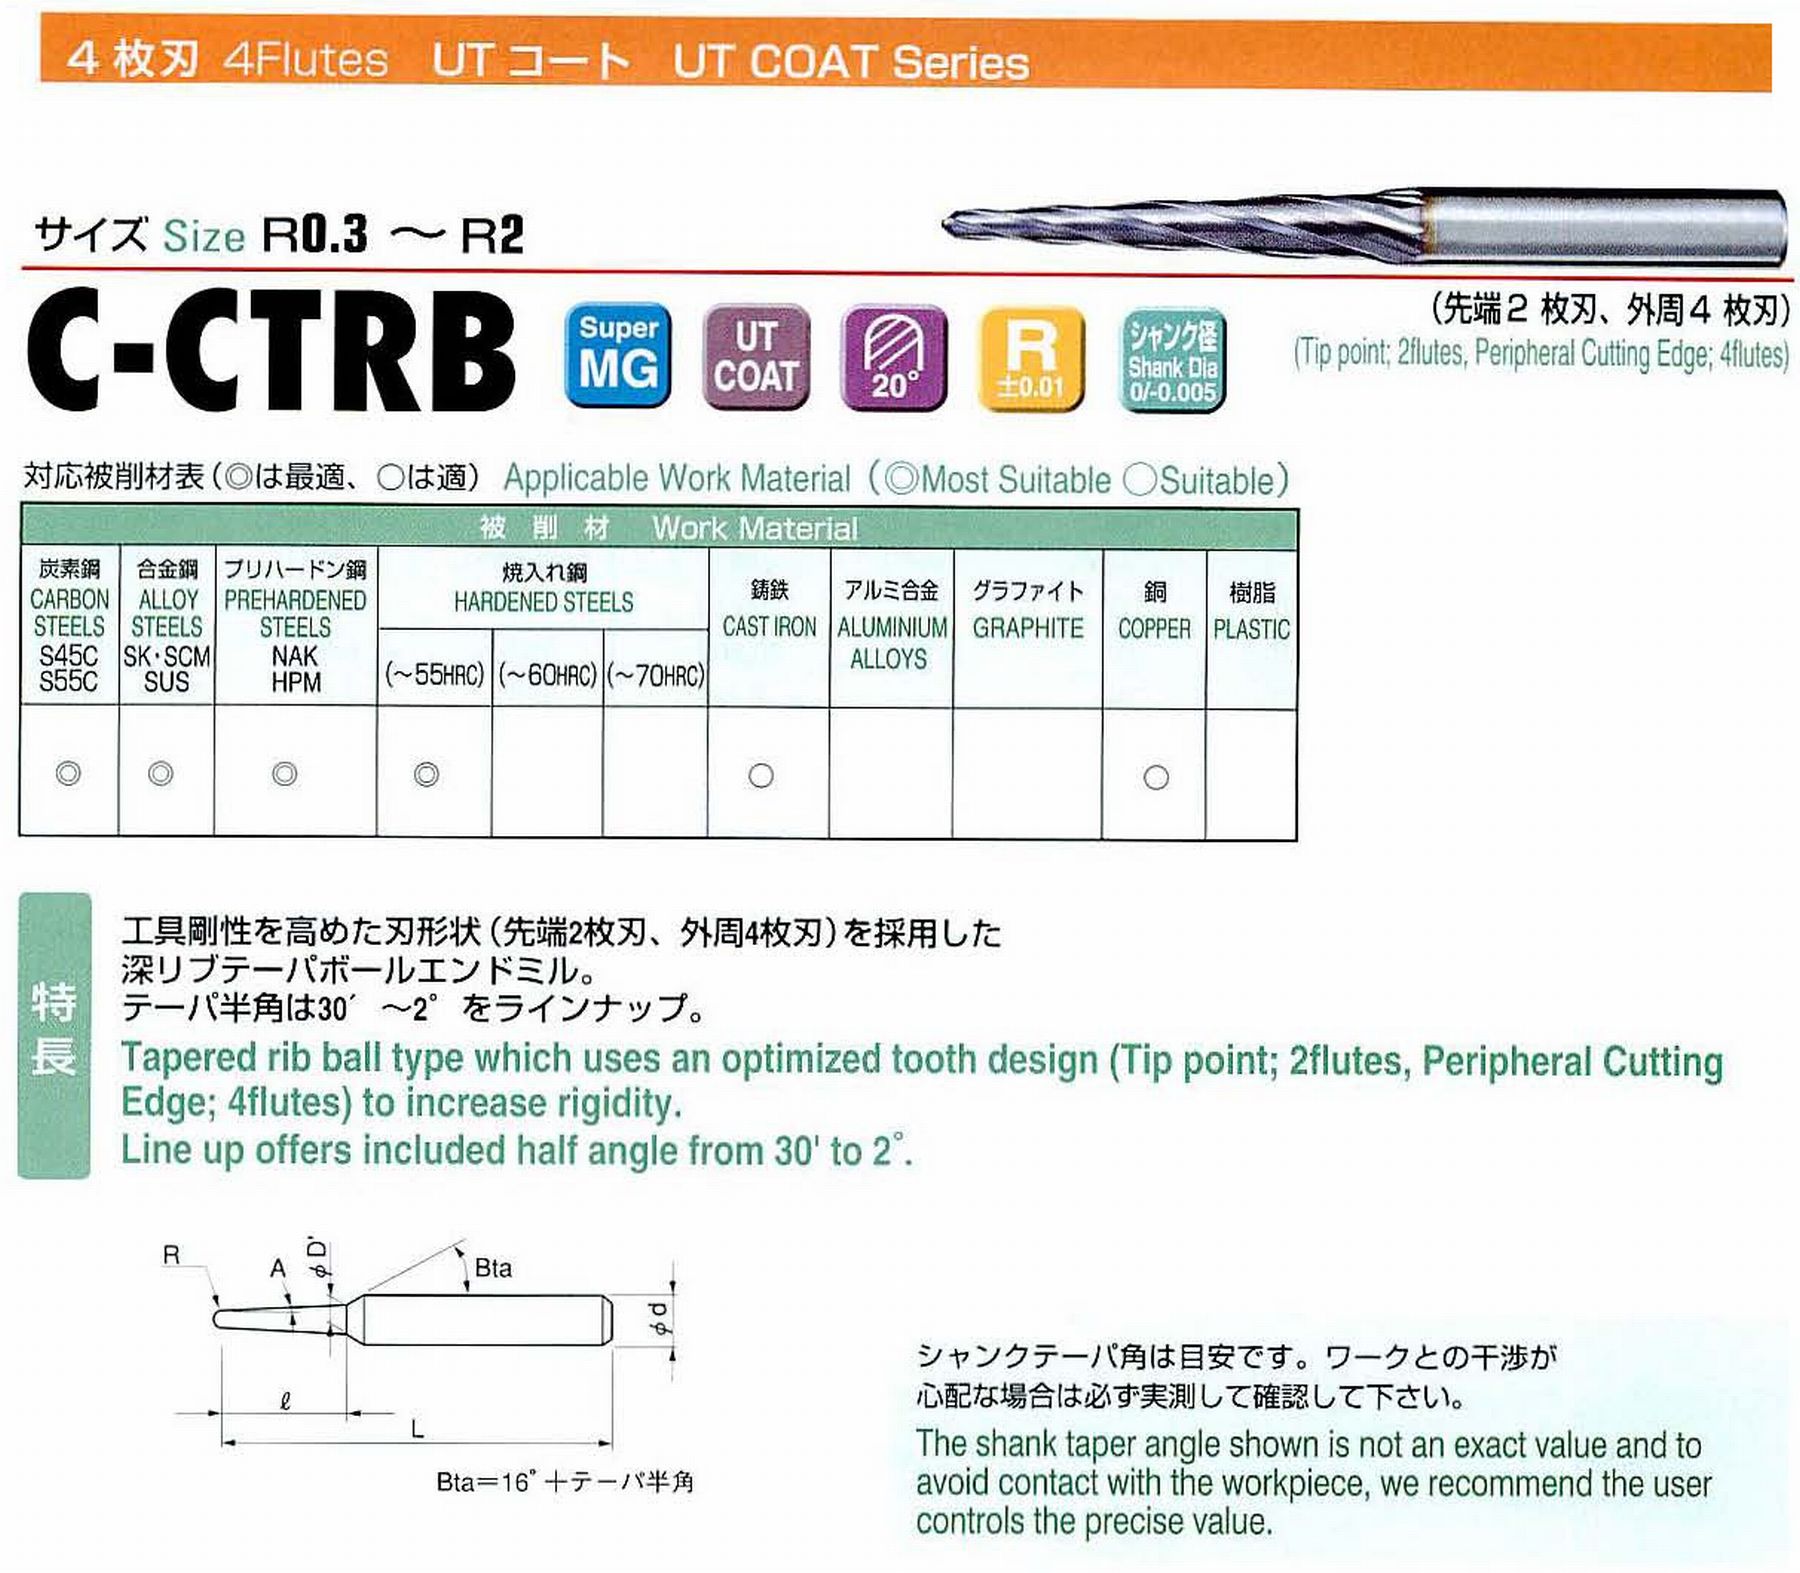 ユニオンツール 4枚刃 C-CTRB4010-8-1 ボール半径R0.5 テーパ半角30′ 刃長8 大端径1.13 全長45 シャンク径4